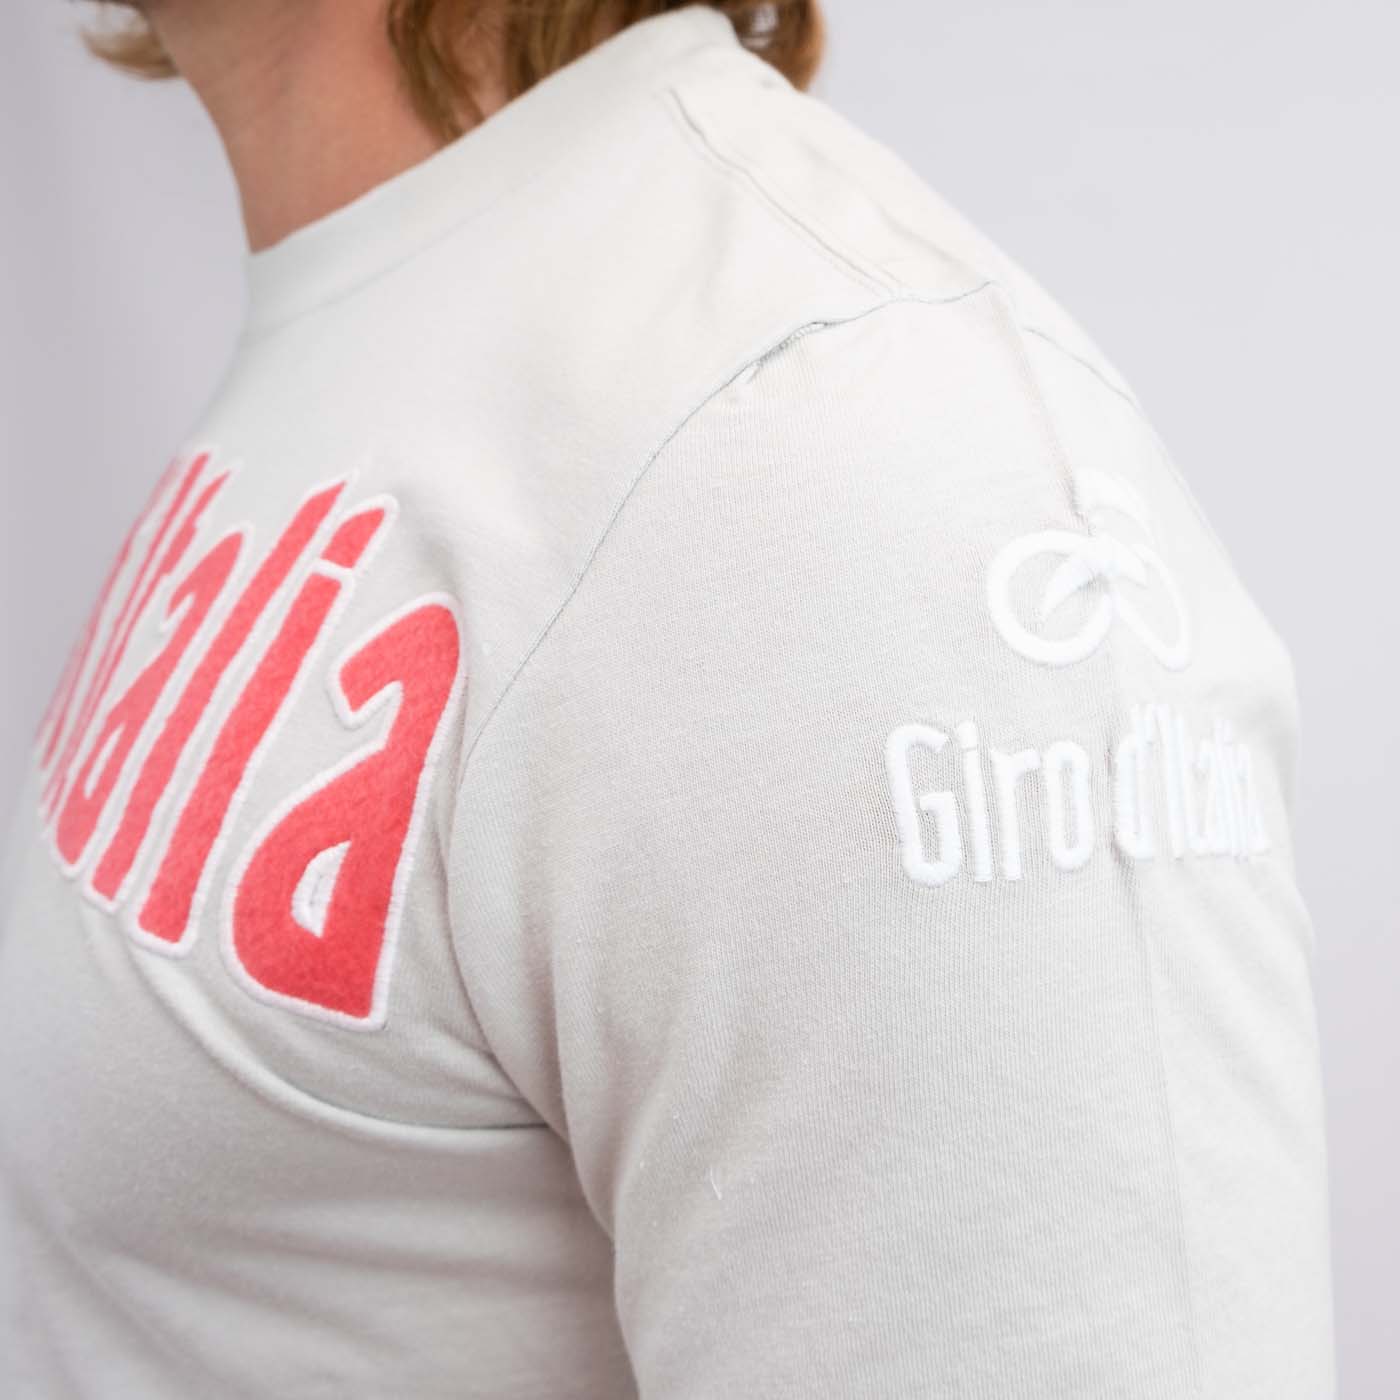 Giro d'Italia Eroi T-Shirt - Grau